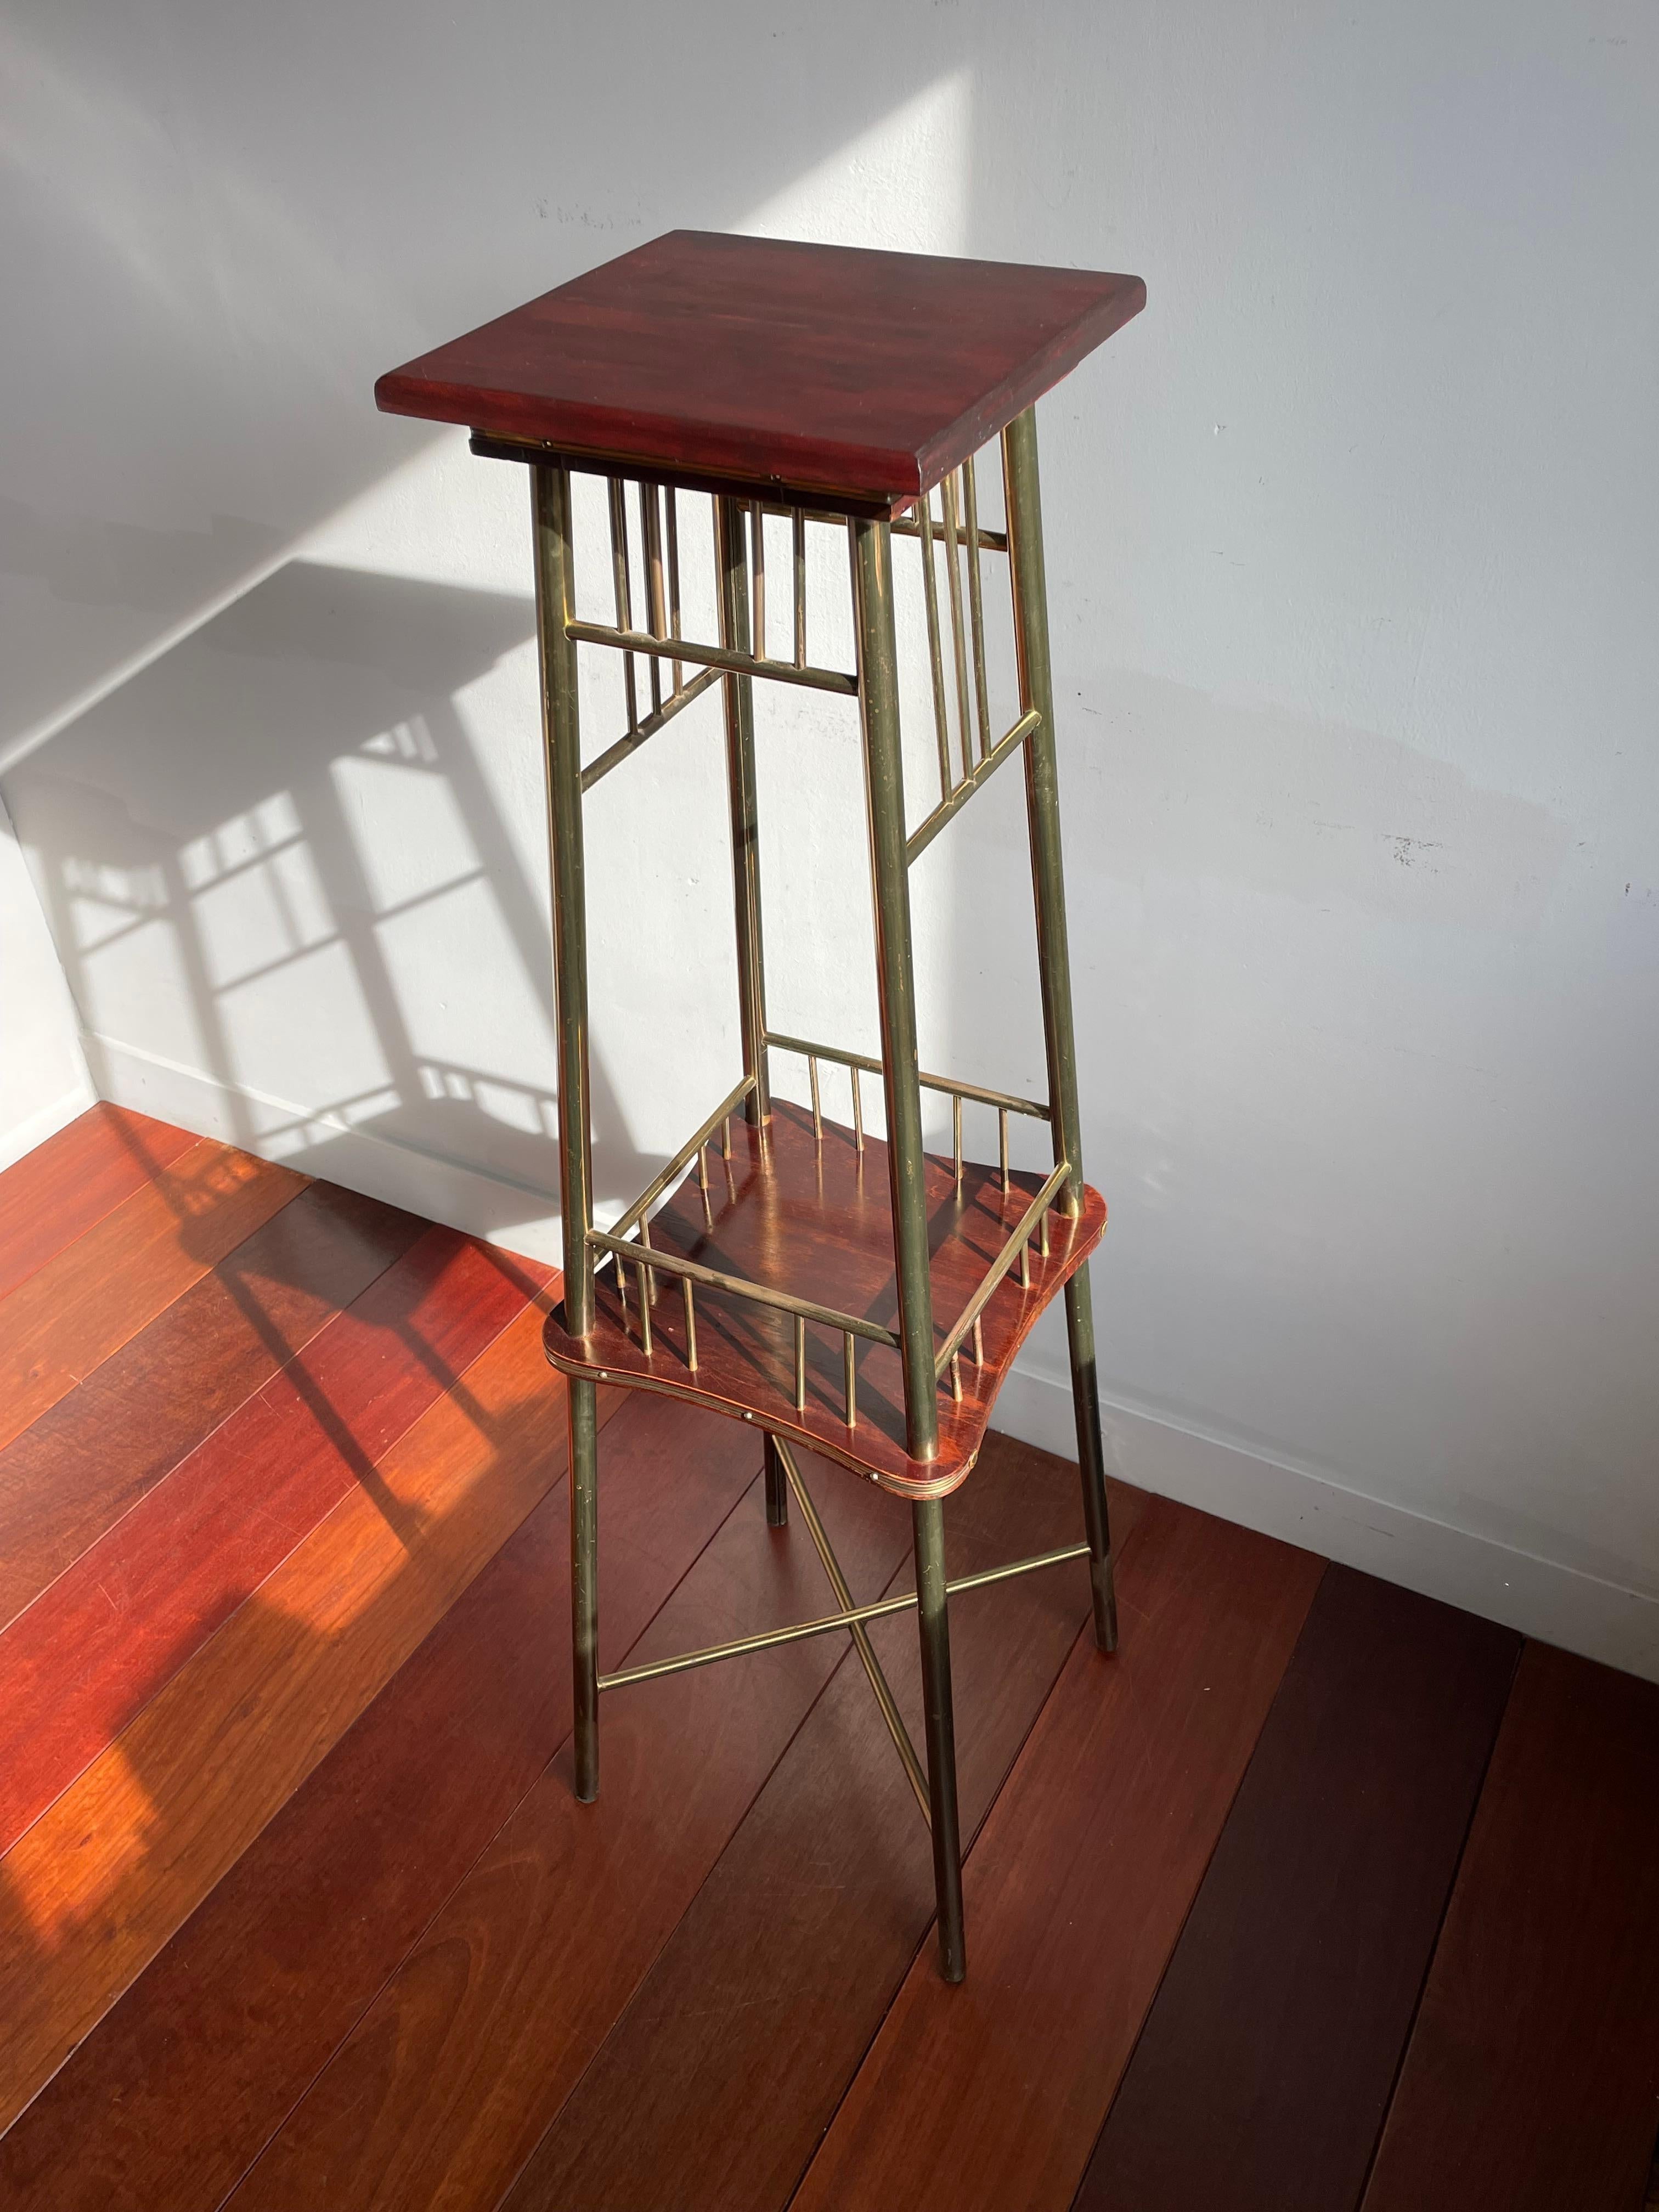 Einzigartiger Tisch mit modernistischem Design, der Ernst Rockhausen zugeschrieben wird, handgefertigt in der Zeit des Arts & Crafts.

Die Kombination aus stilvollem und zeitlosem Design und den natürlichen Materialien macht diesen seltenen Tisch